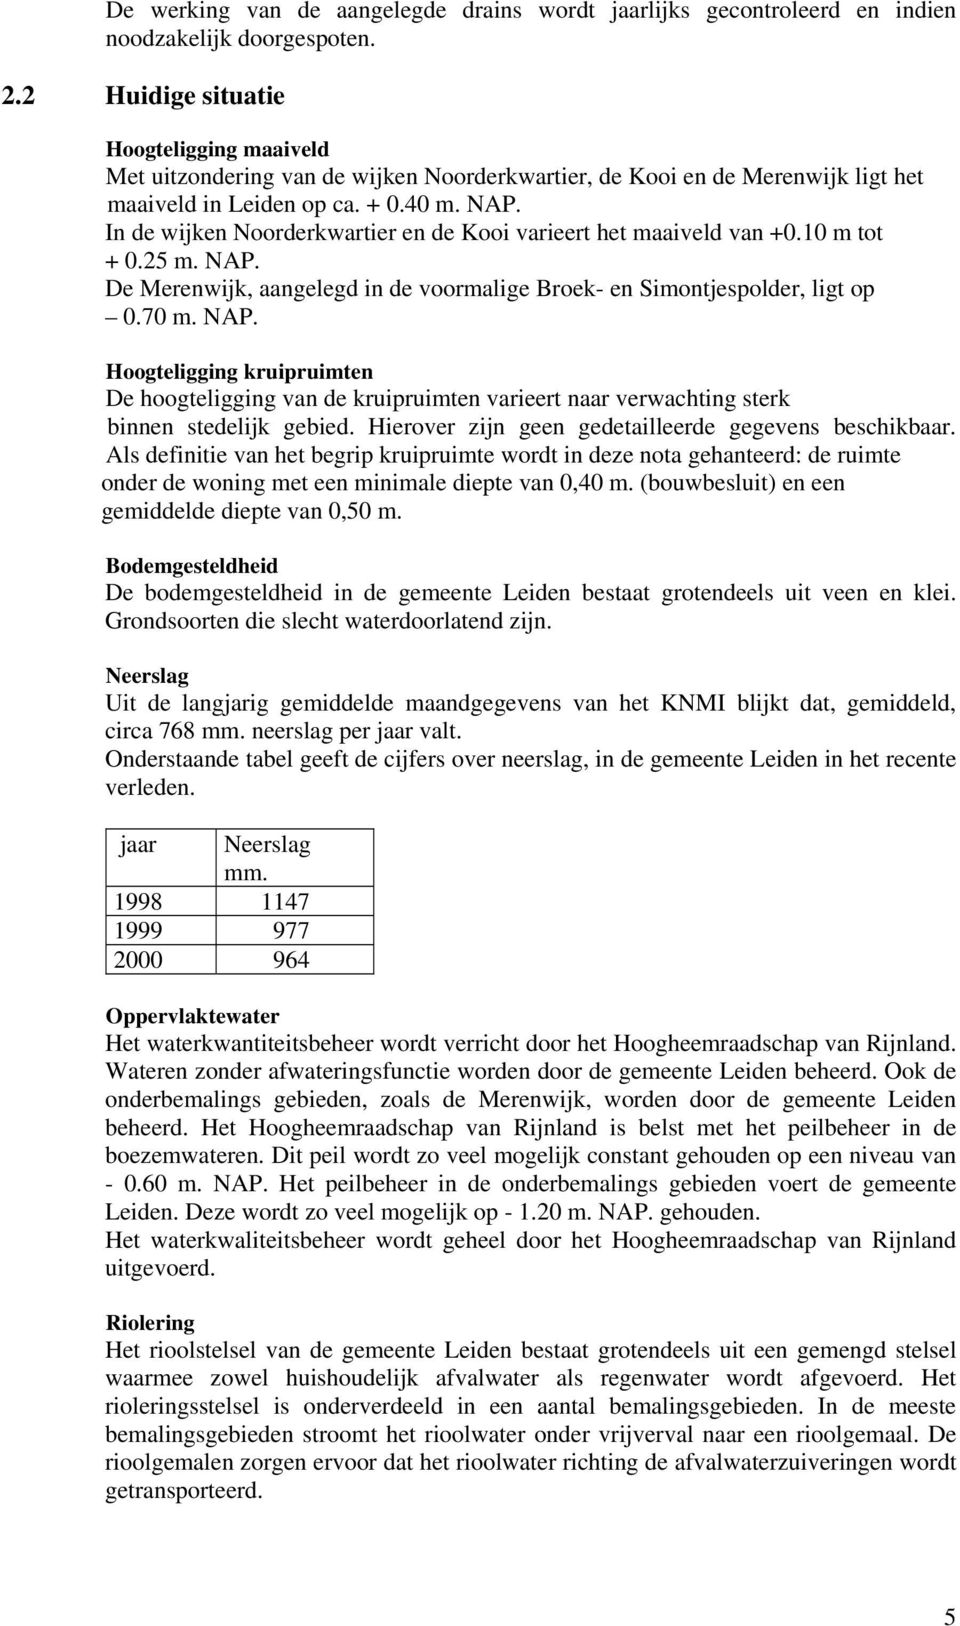 In de wijken Noorderkwartier en de Kooi varieert het maaiveld van +0.10 m tot + 0.25 m. NAP.